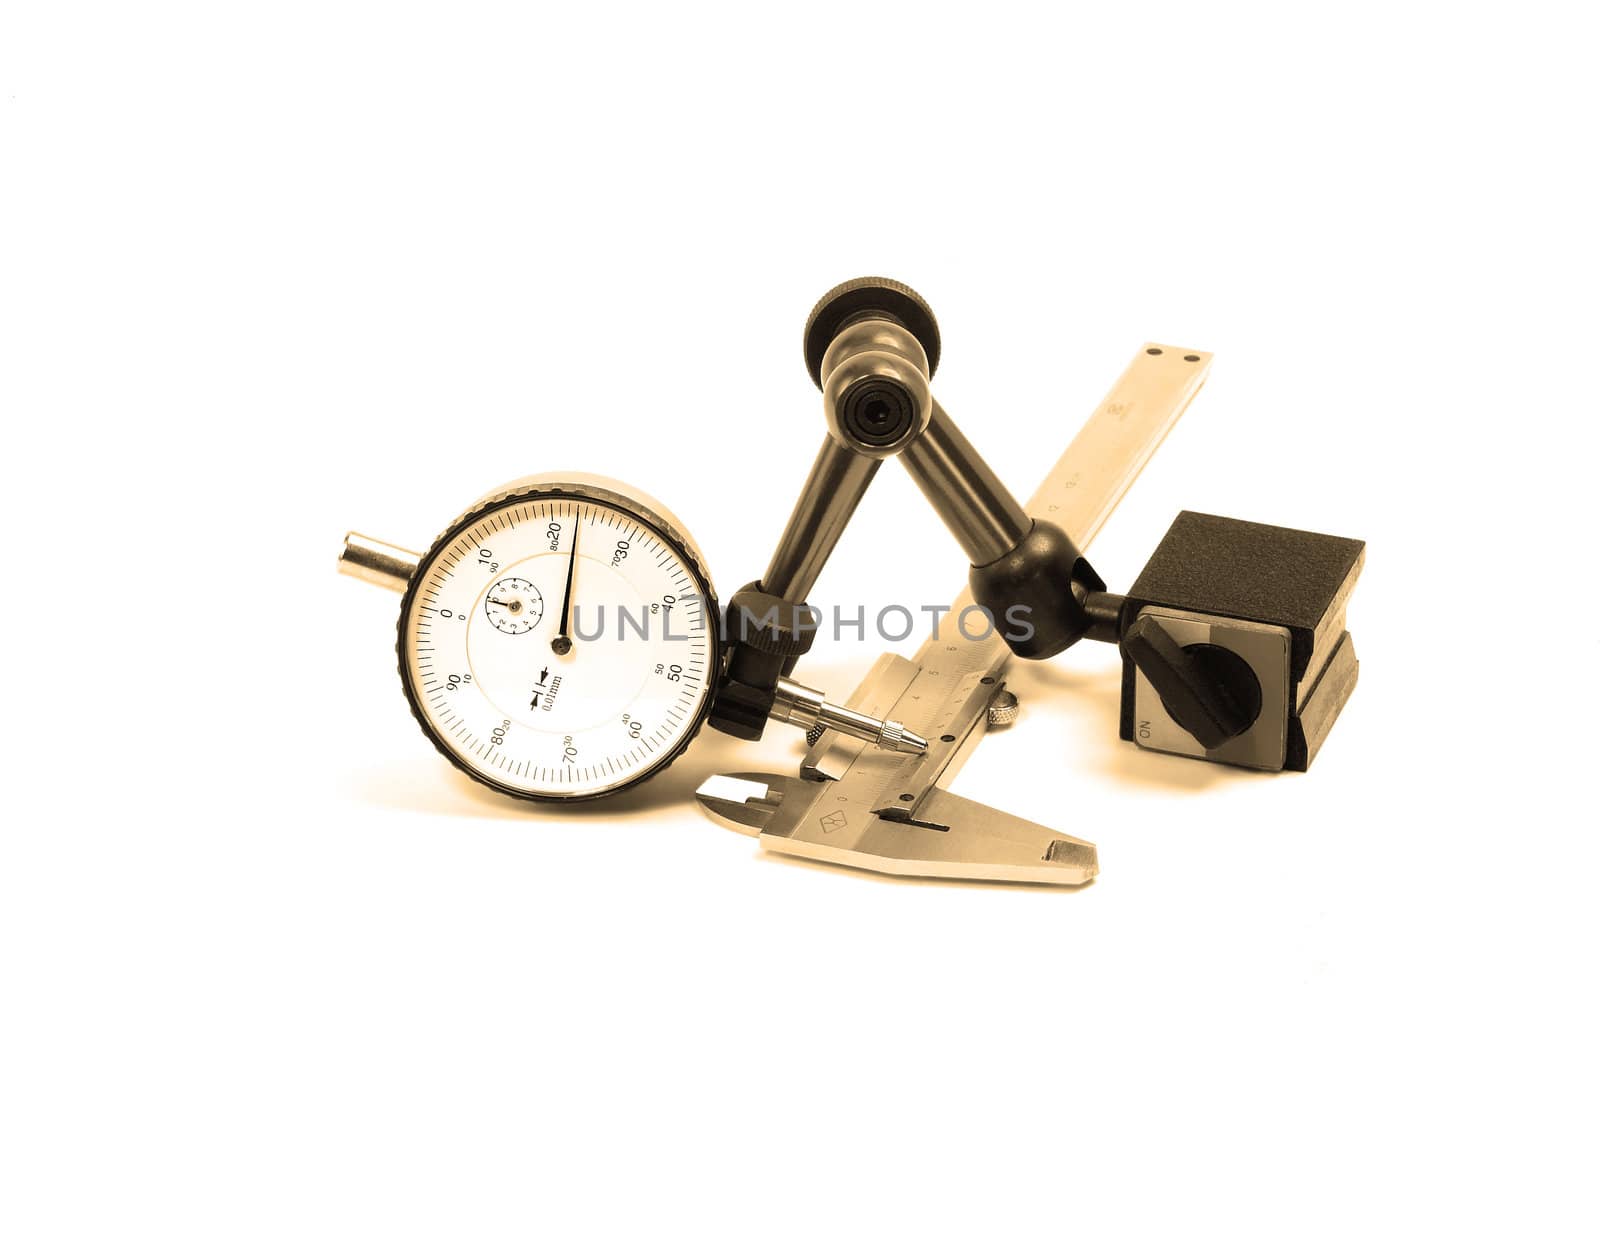 micrometer and caliper by keko64